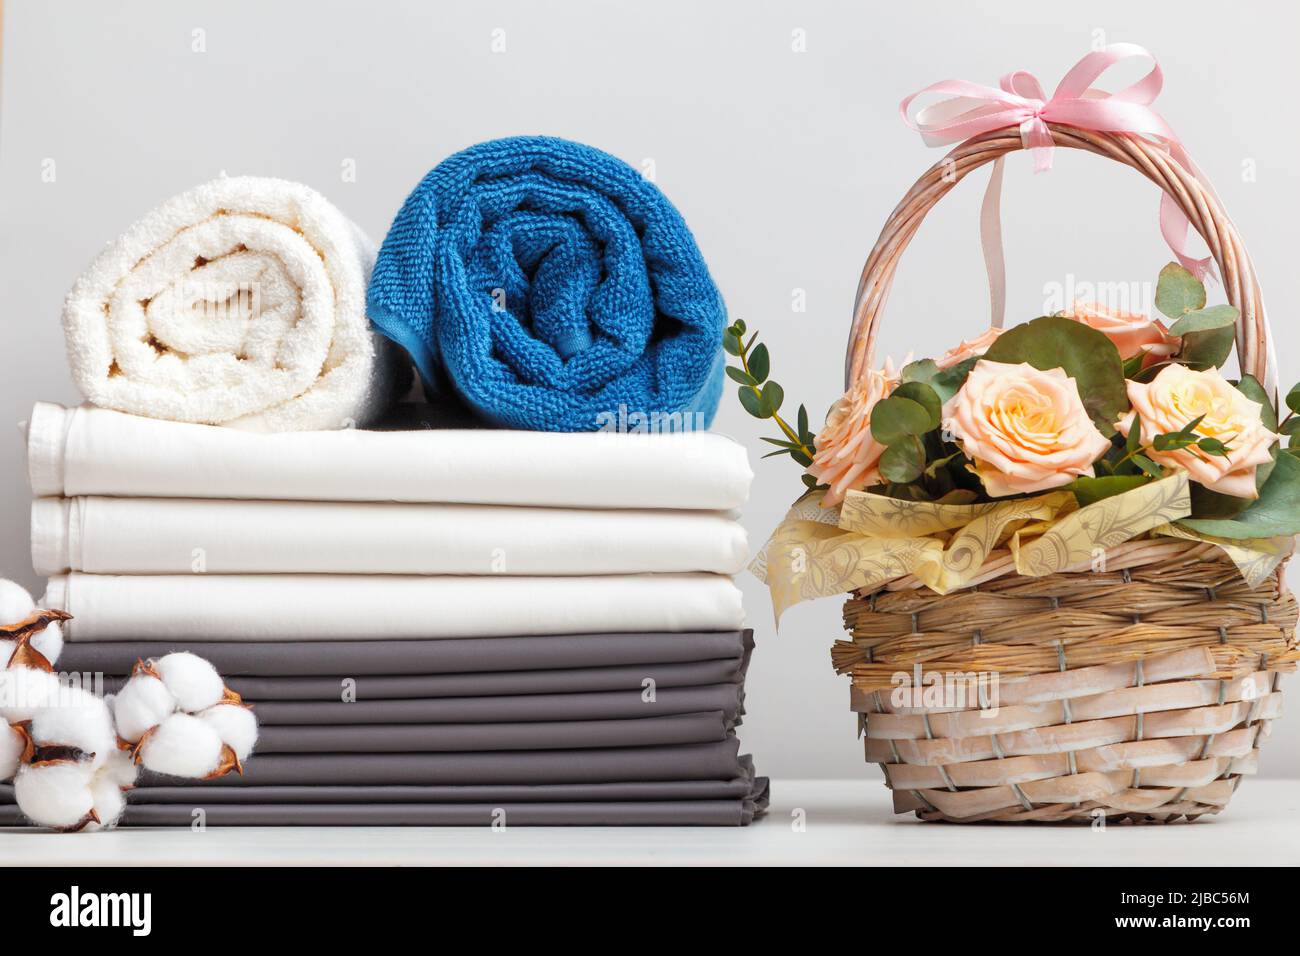 Una pila di lenzuola biancheria da letto rotoli di asciugamani. Cestino con fiori di rose sul tavolo. Foto Stock